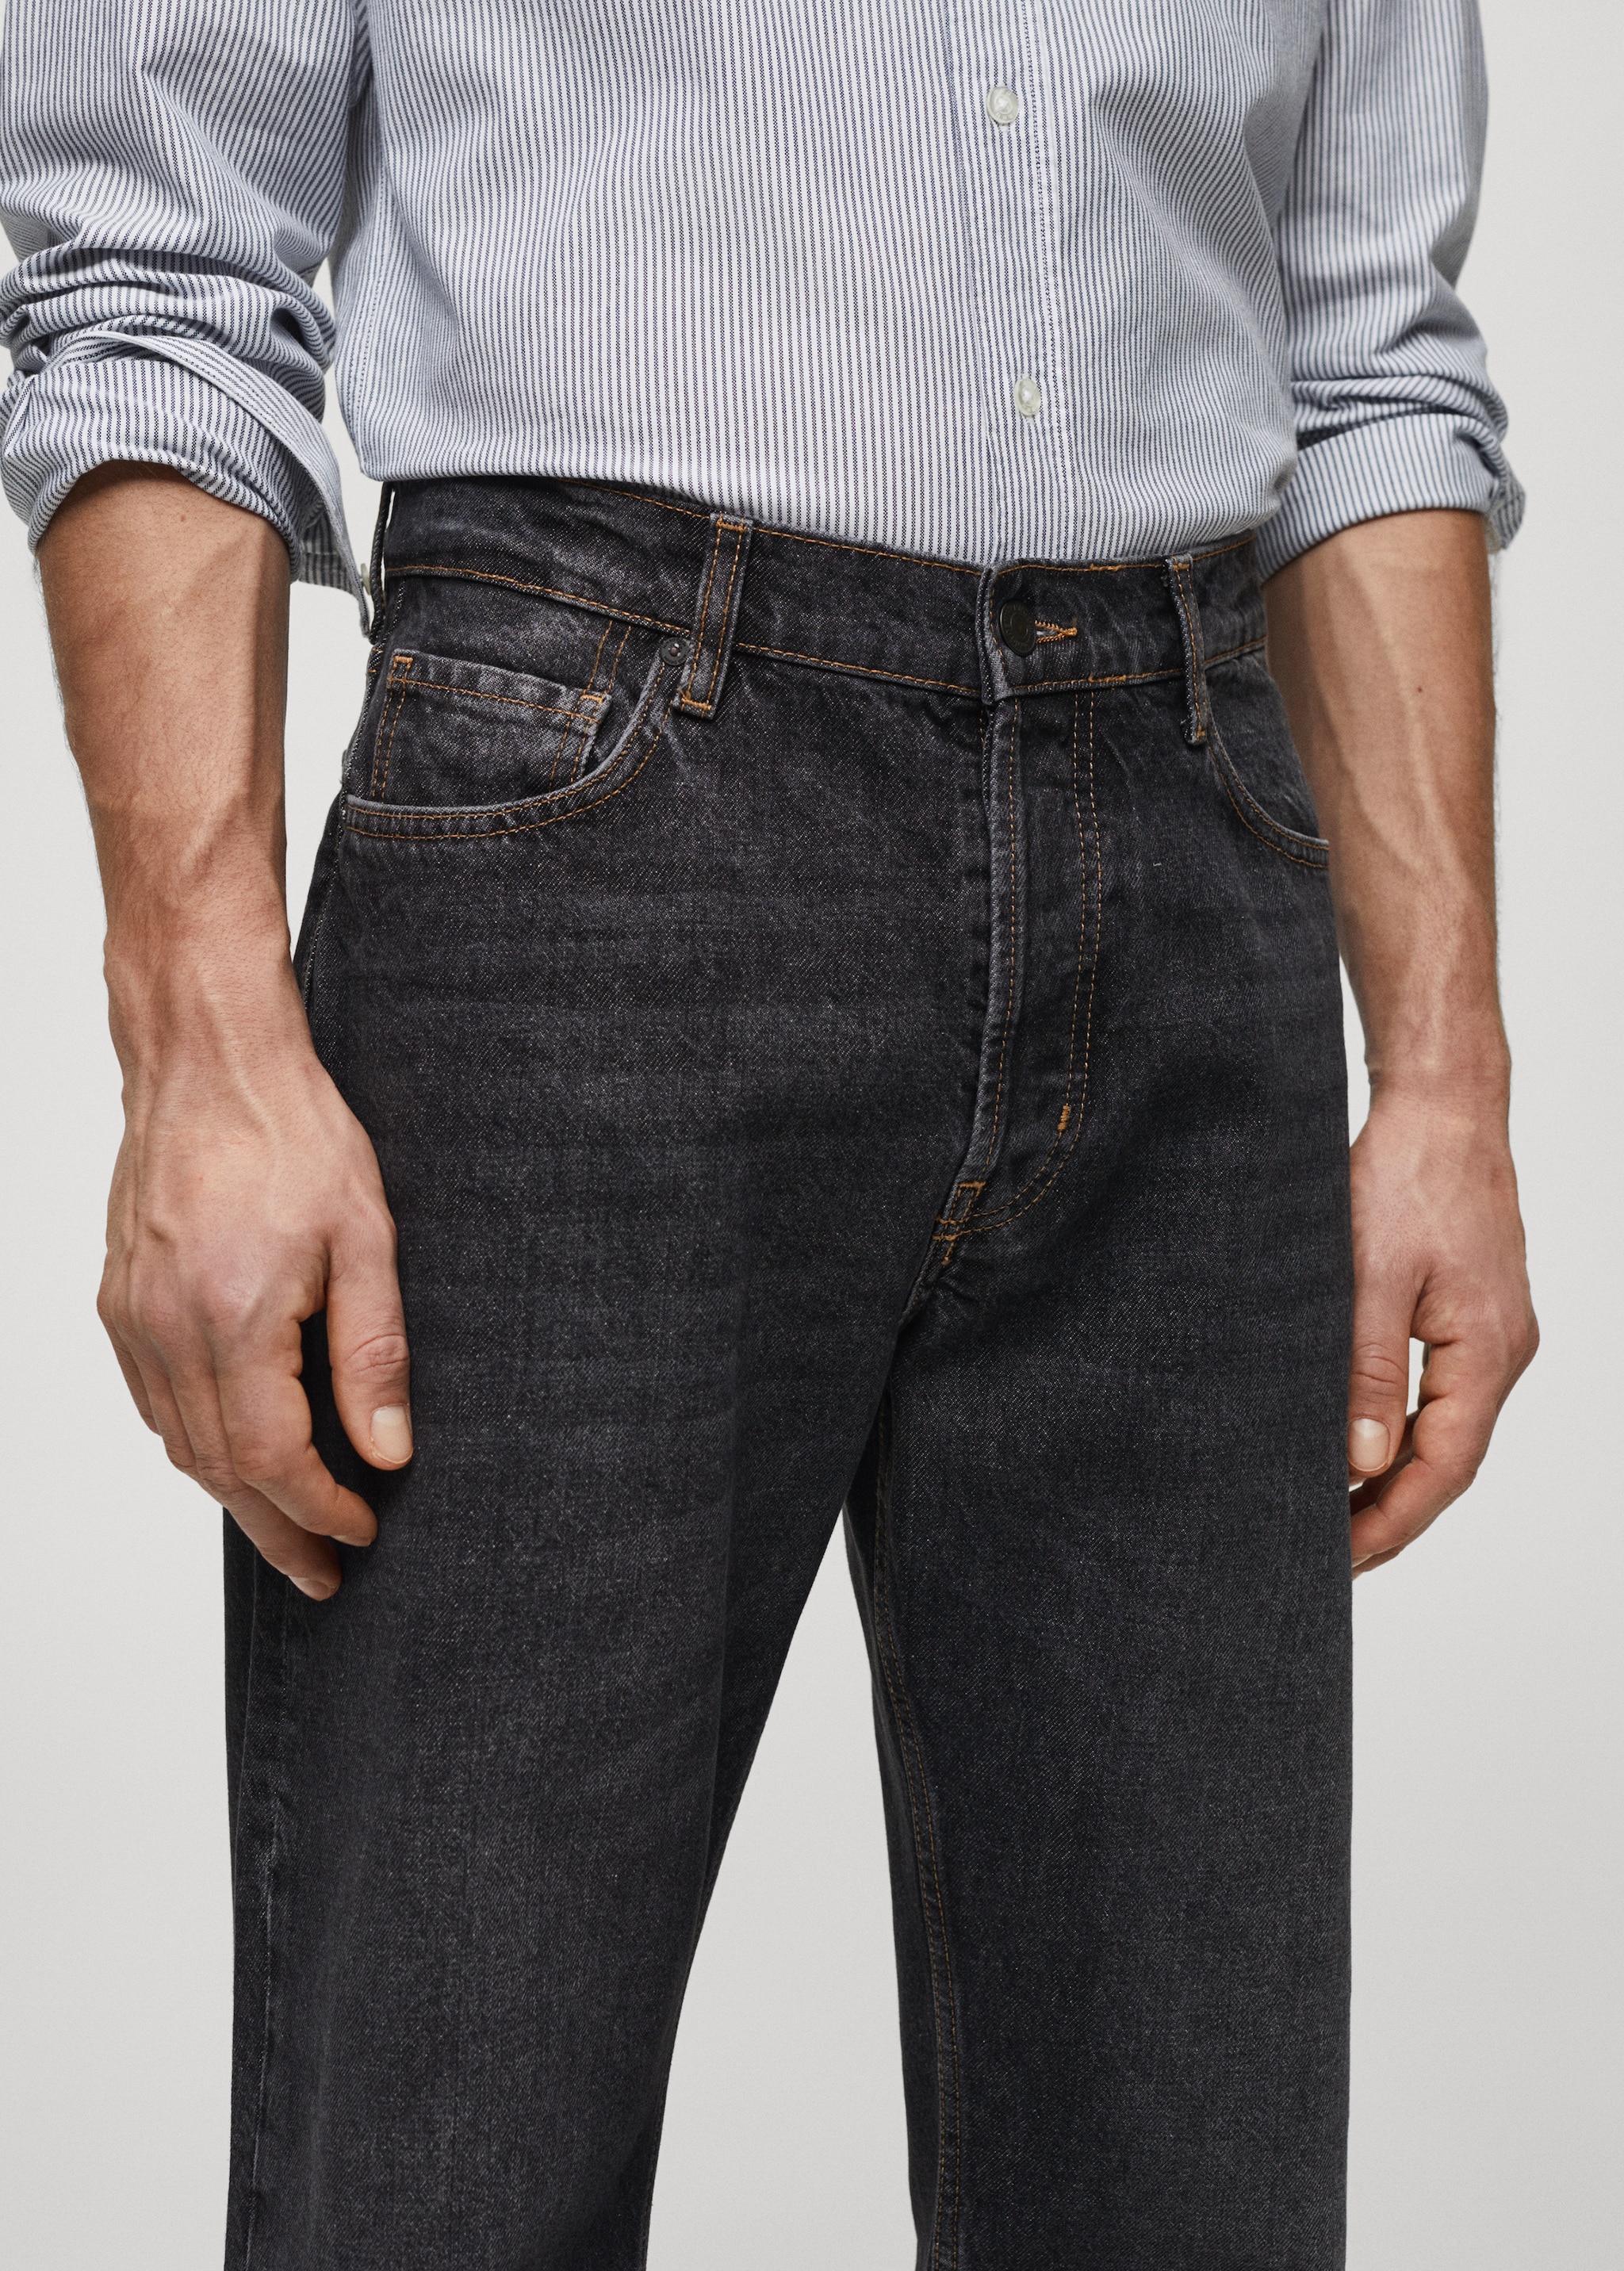 جينز بغسيل داكن ومريح - تفاصيل المنتج 1